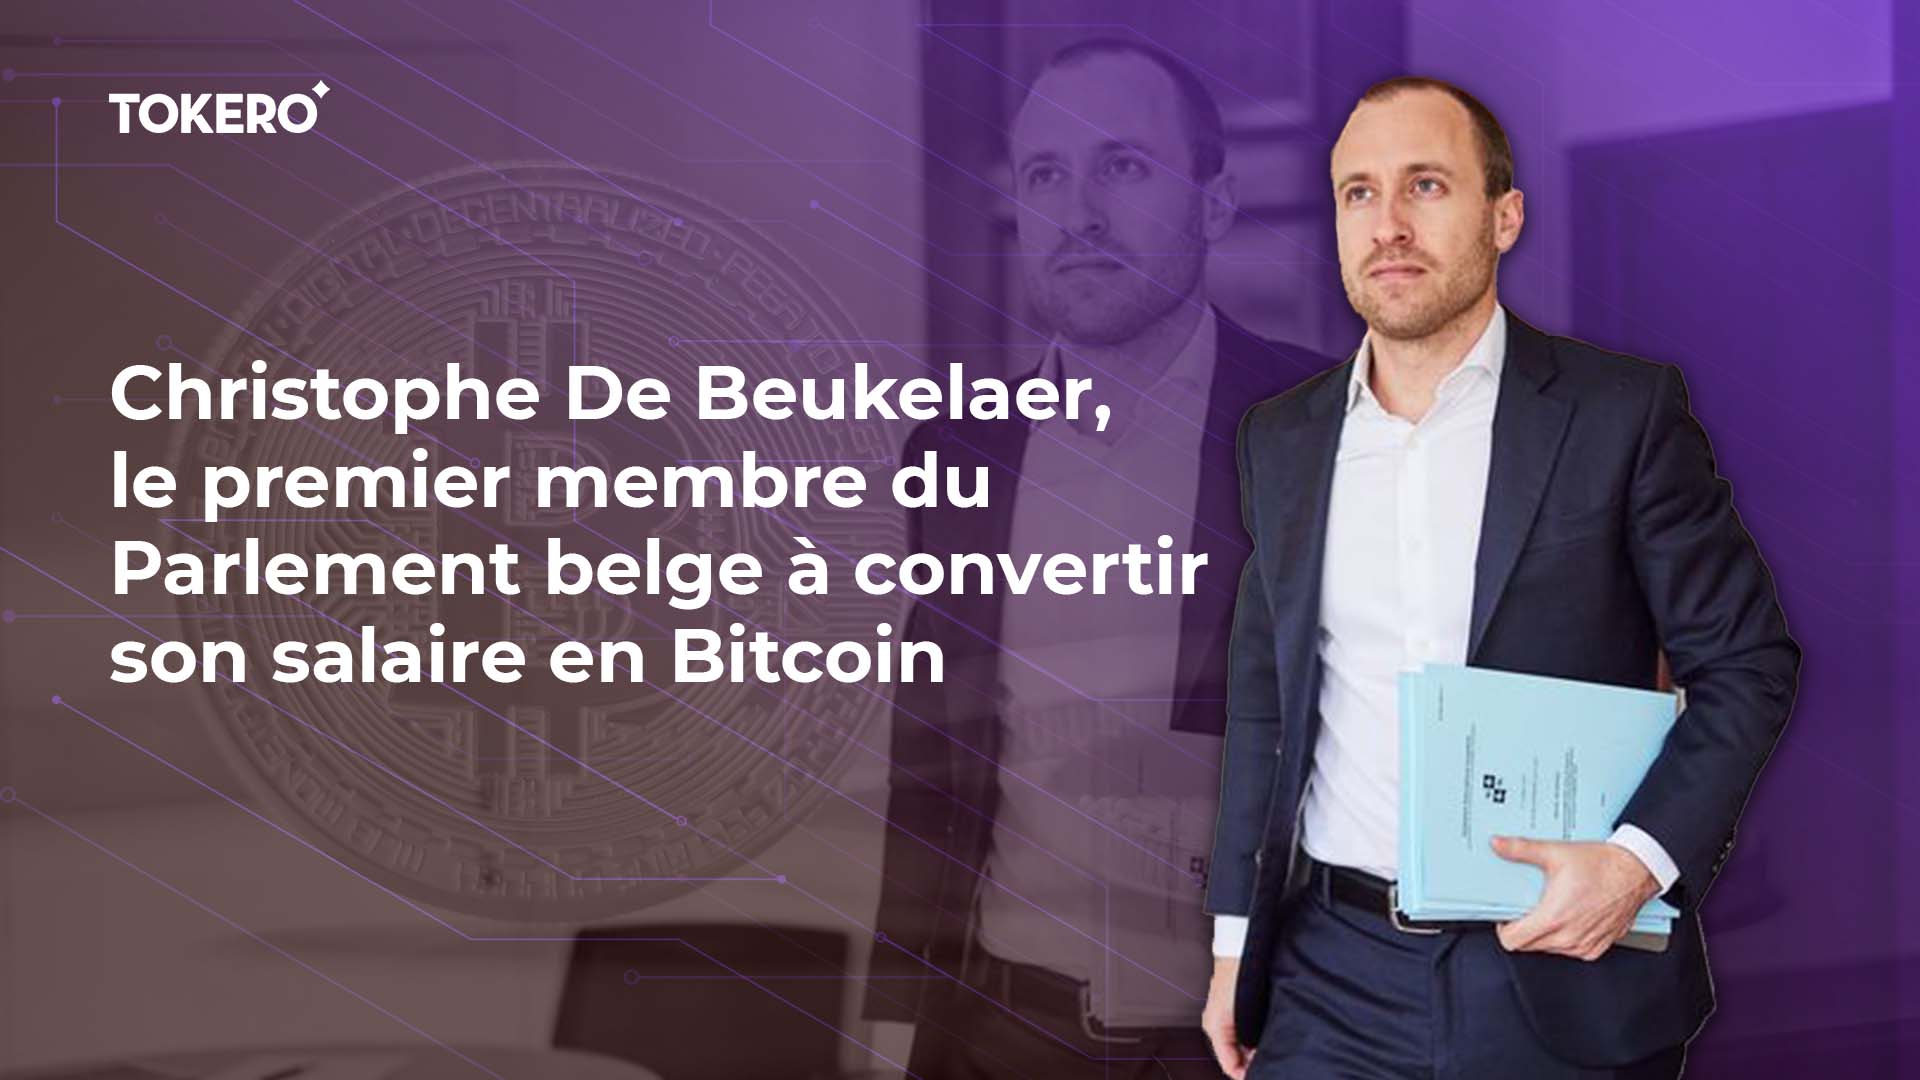 Christophe De Beukelaer, le premier membre du Parlement belge à convertir son salaire en Bitcoin